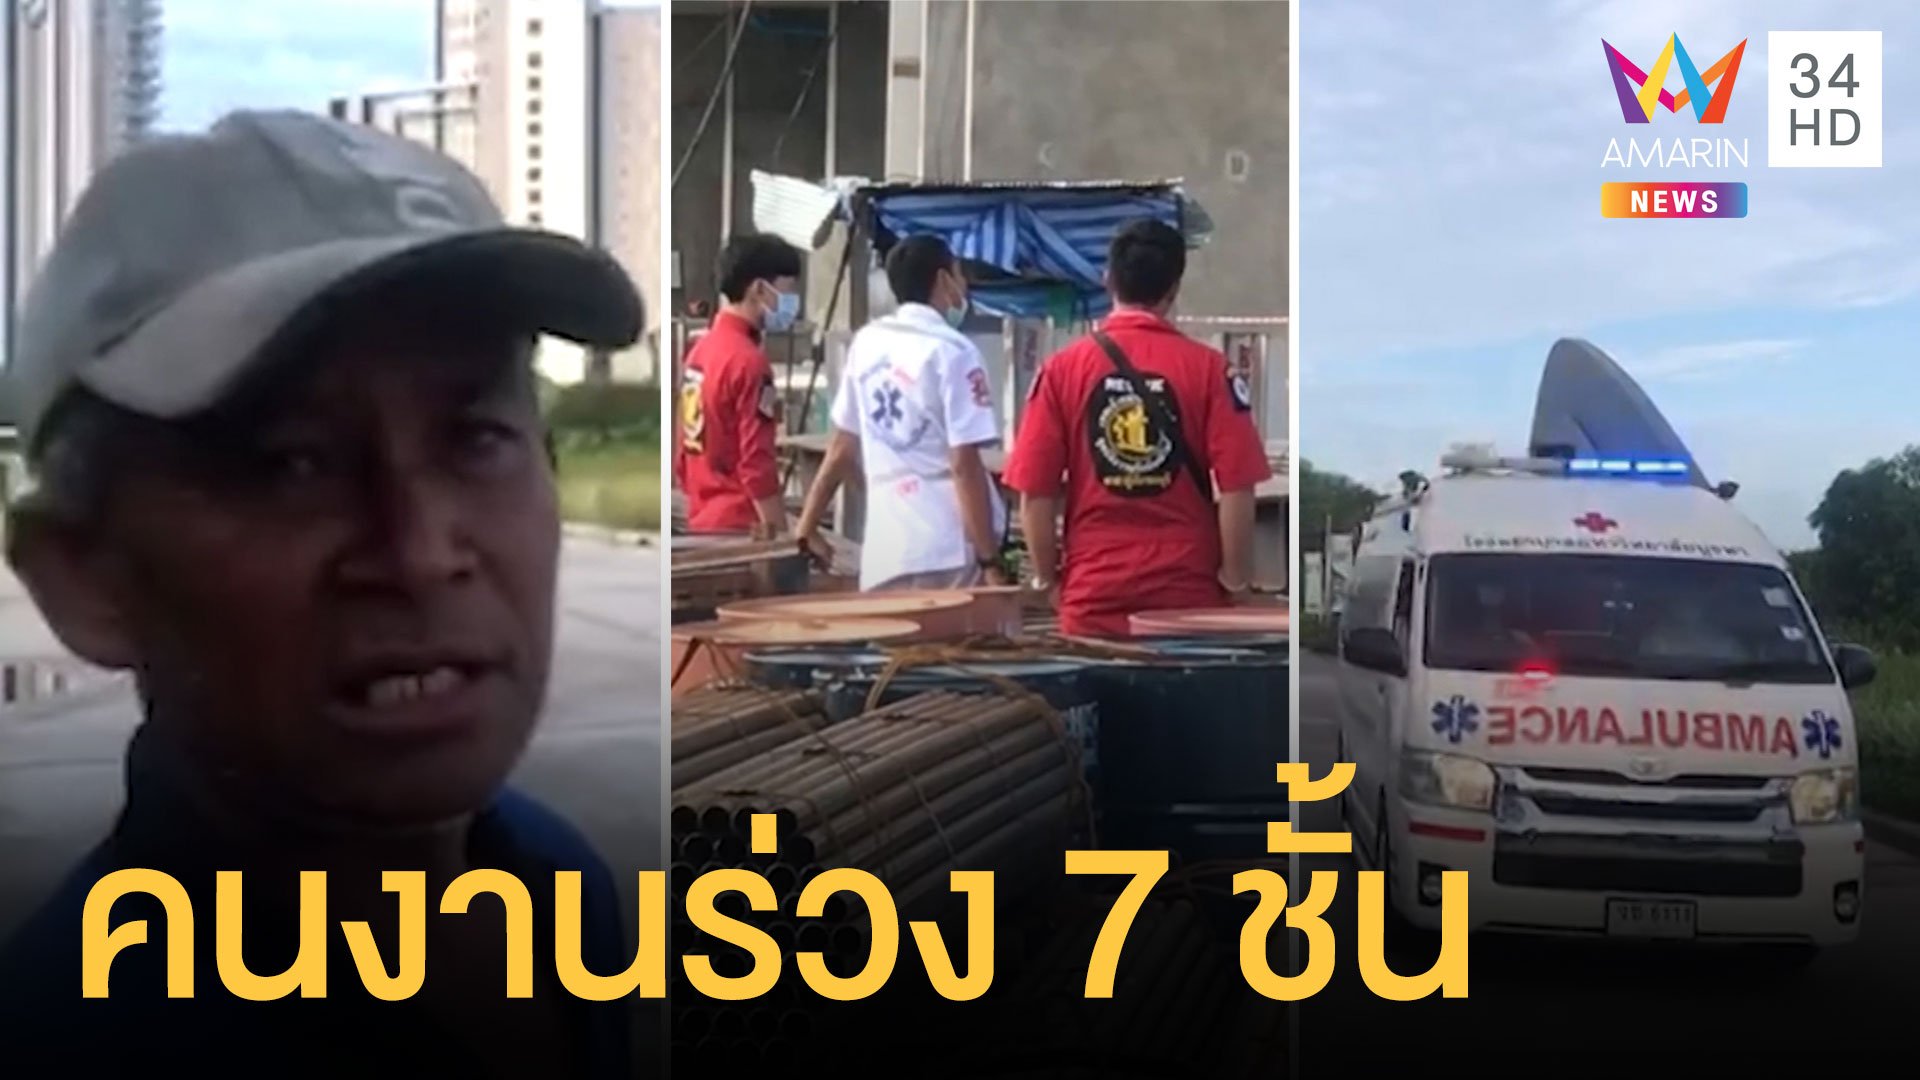 นั่งร้านขนแผ่นปูนเกือบตันหัก ทำคนงานพม่าตกชั้น 7 ดับ 2 สาหัส 2 | ข่าวเที่ยงอมรินทร์ | 16 ส.ค. 63 | AMARIN TVHD34